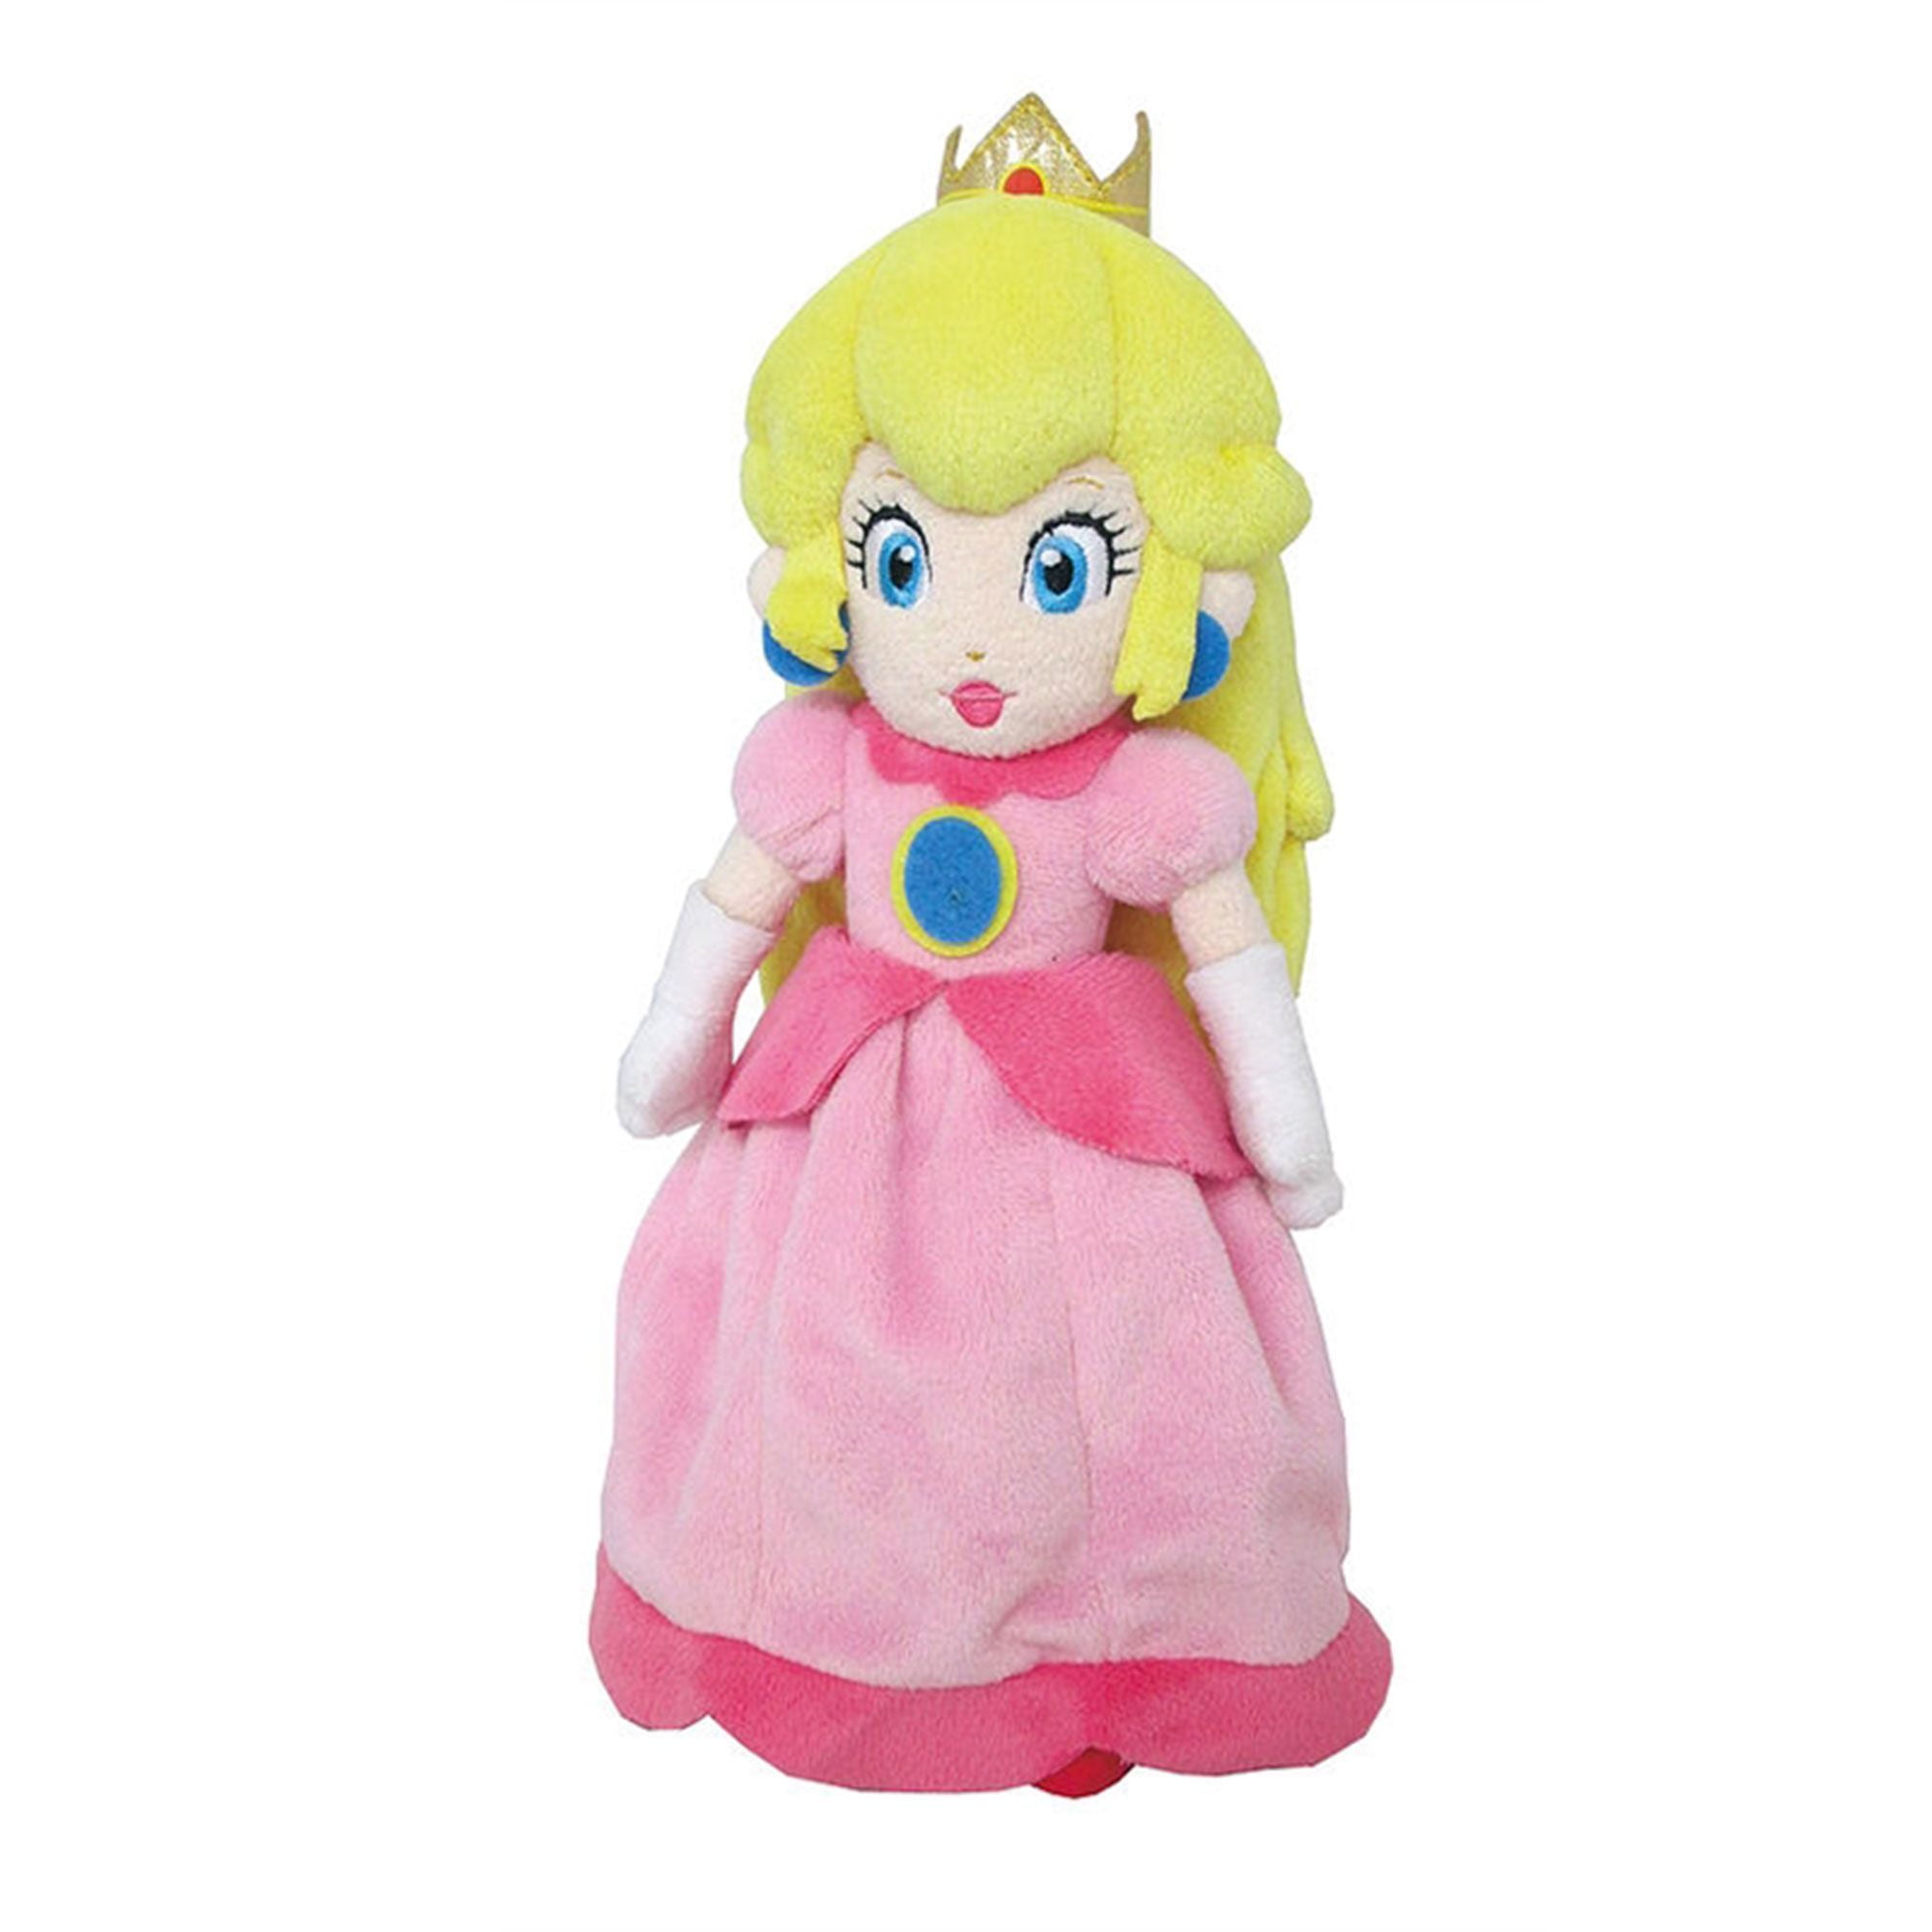 princess peach doll